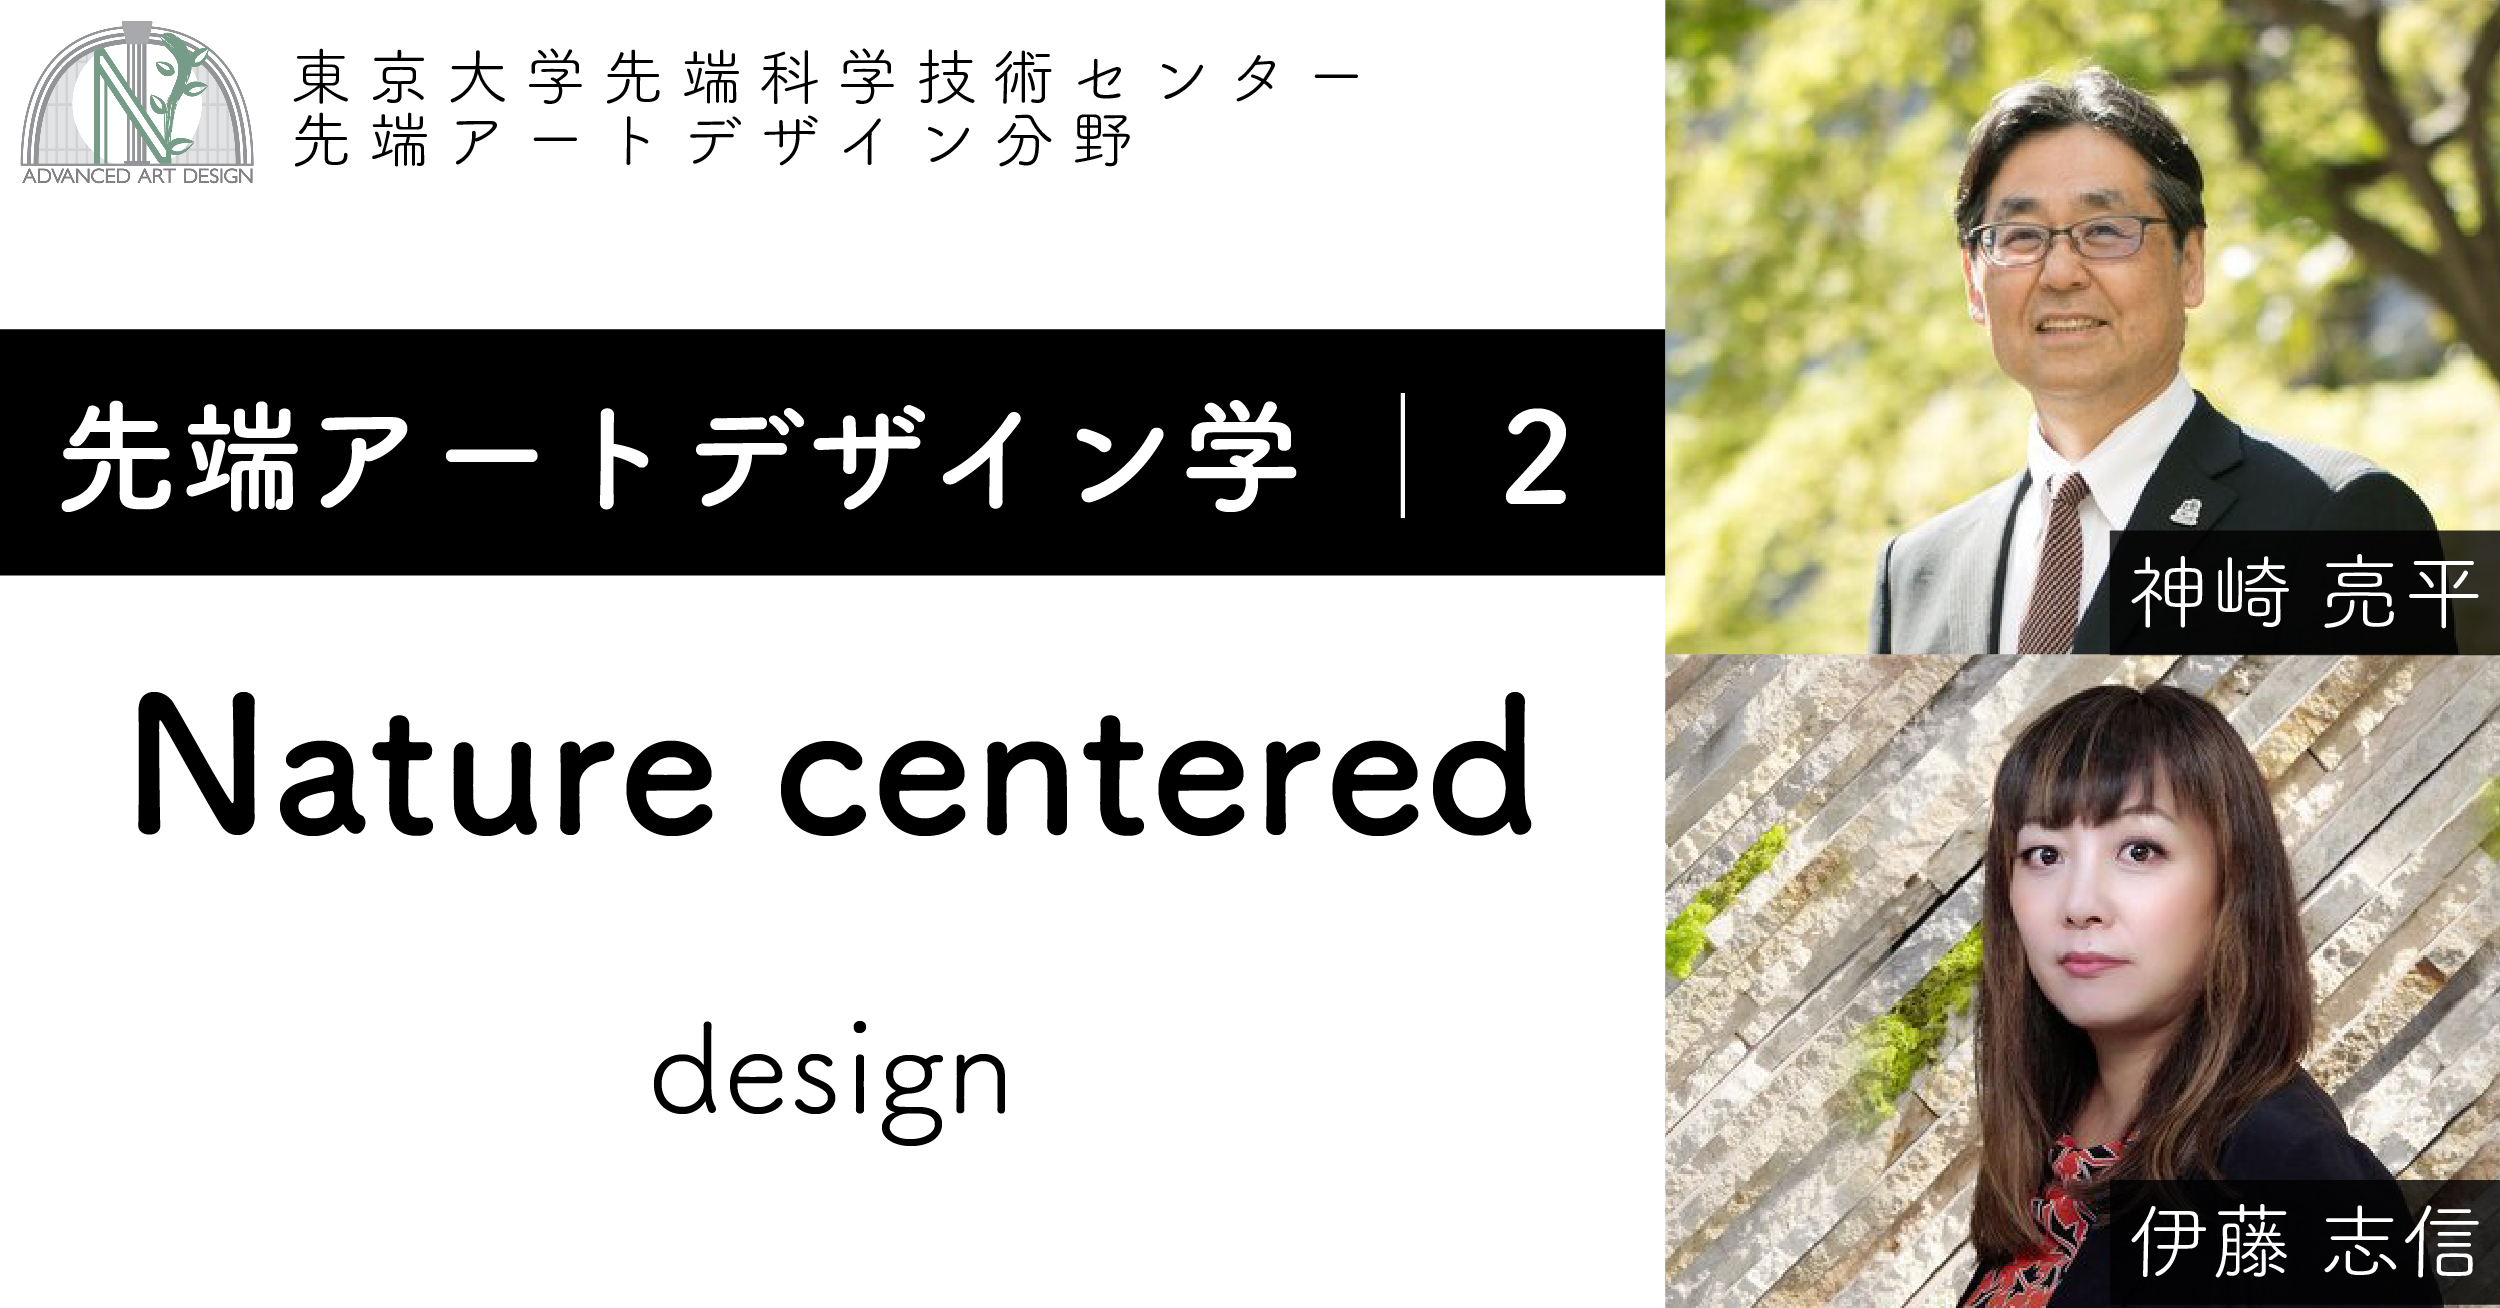 Nature centered - design